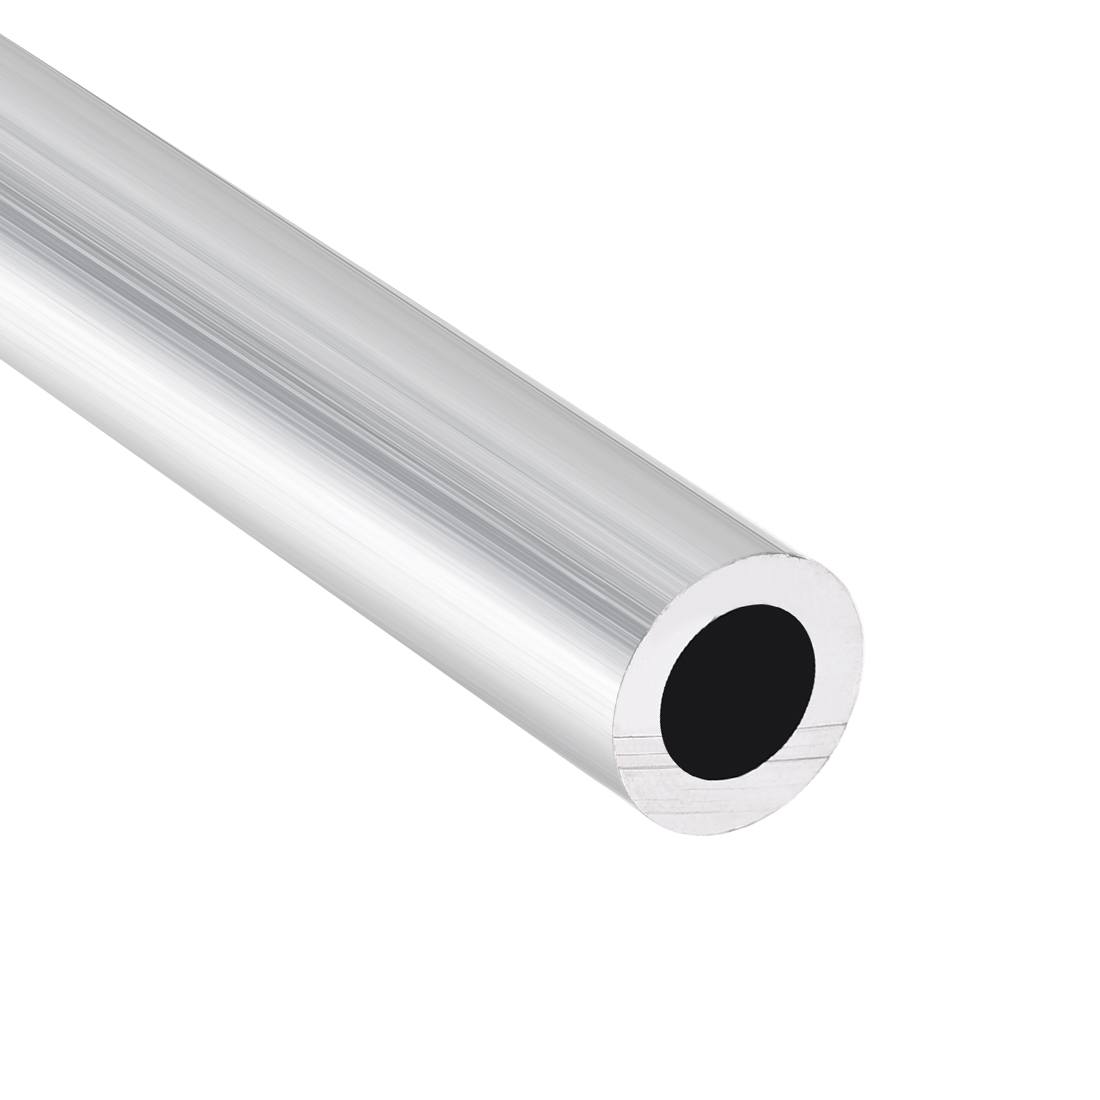 OLJF Aluminum Round Tube Length 500mm Inner Diameter Seamless 1Pcs,OD 36mm ID 15mm